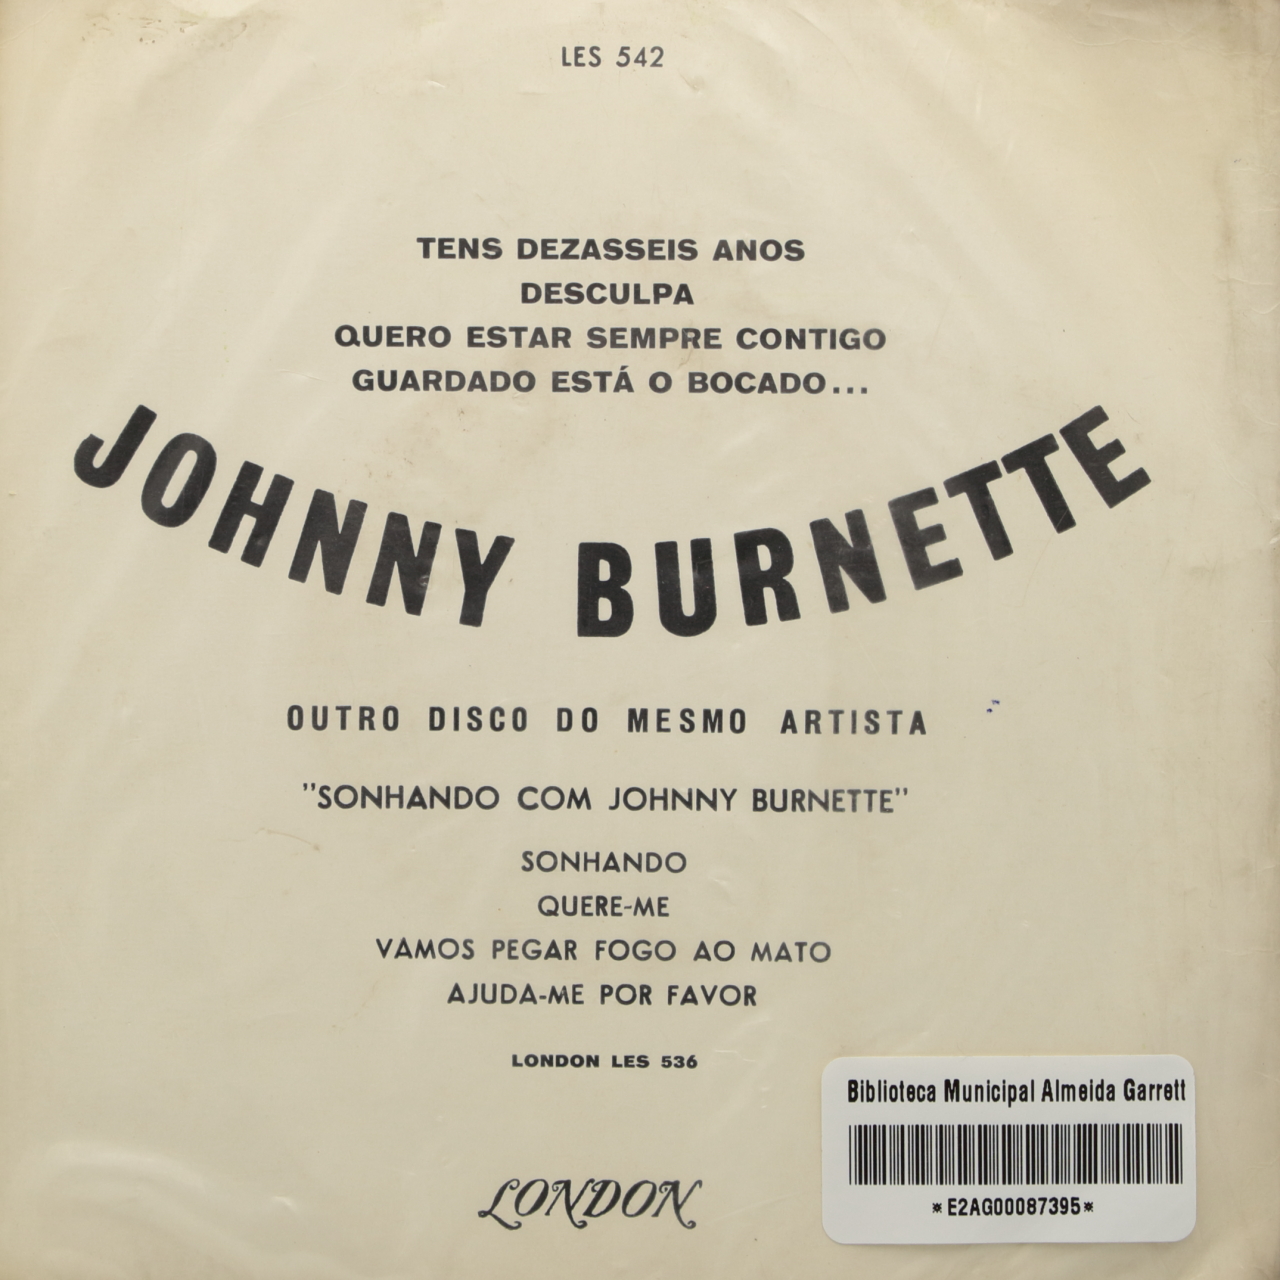 Johnny Burnette